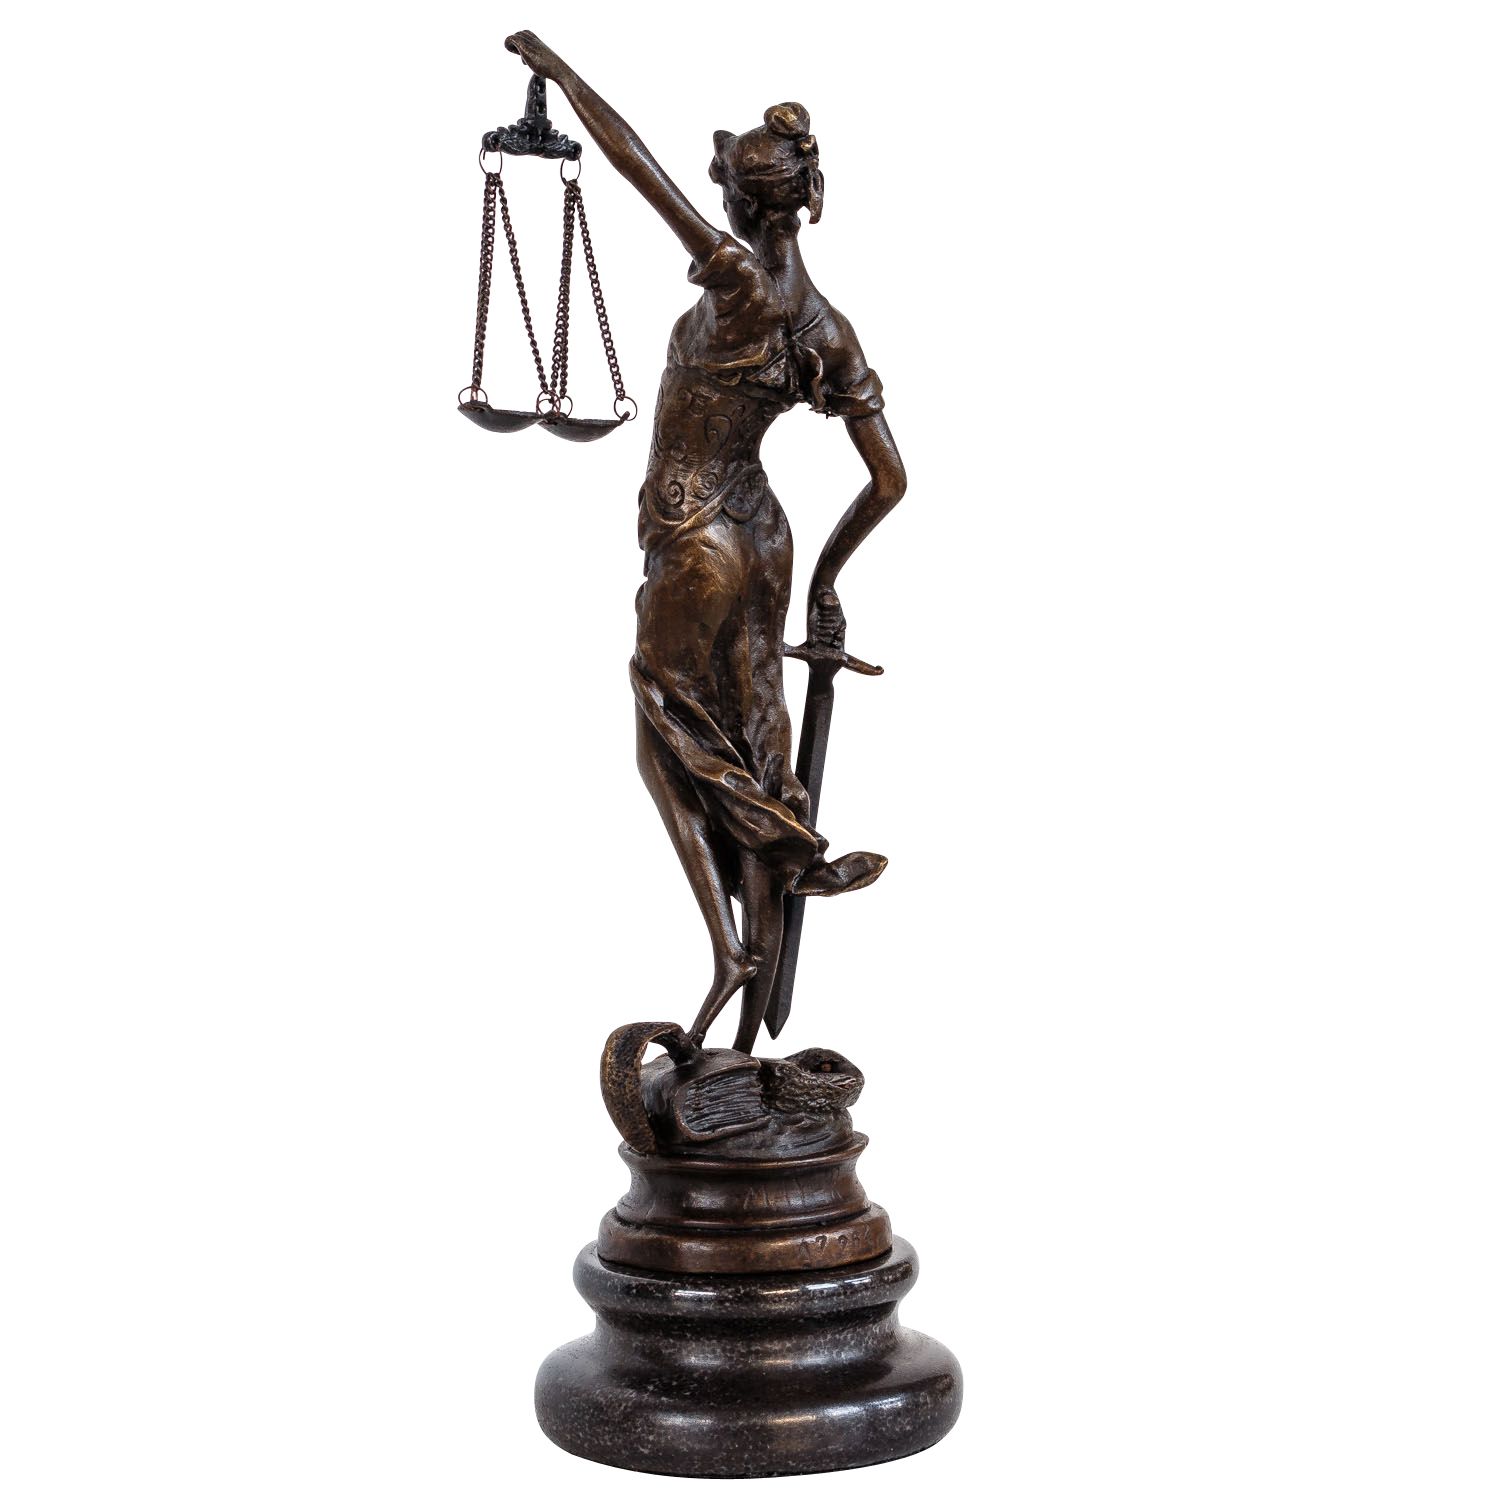 24cm Escultura Justicia de bronce dama de la Justicia estilo antiguo figura